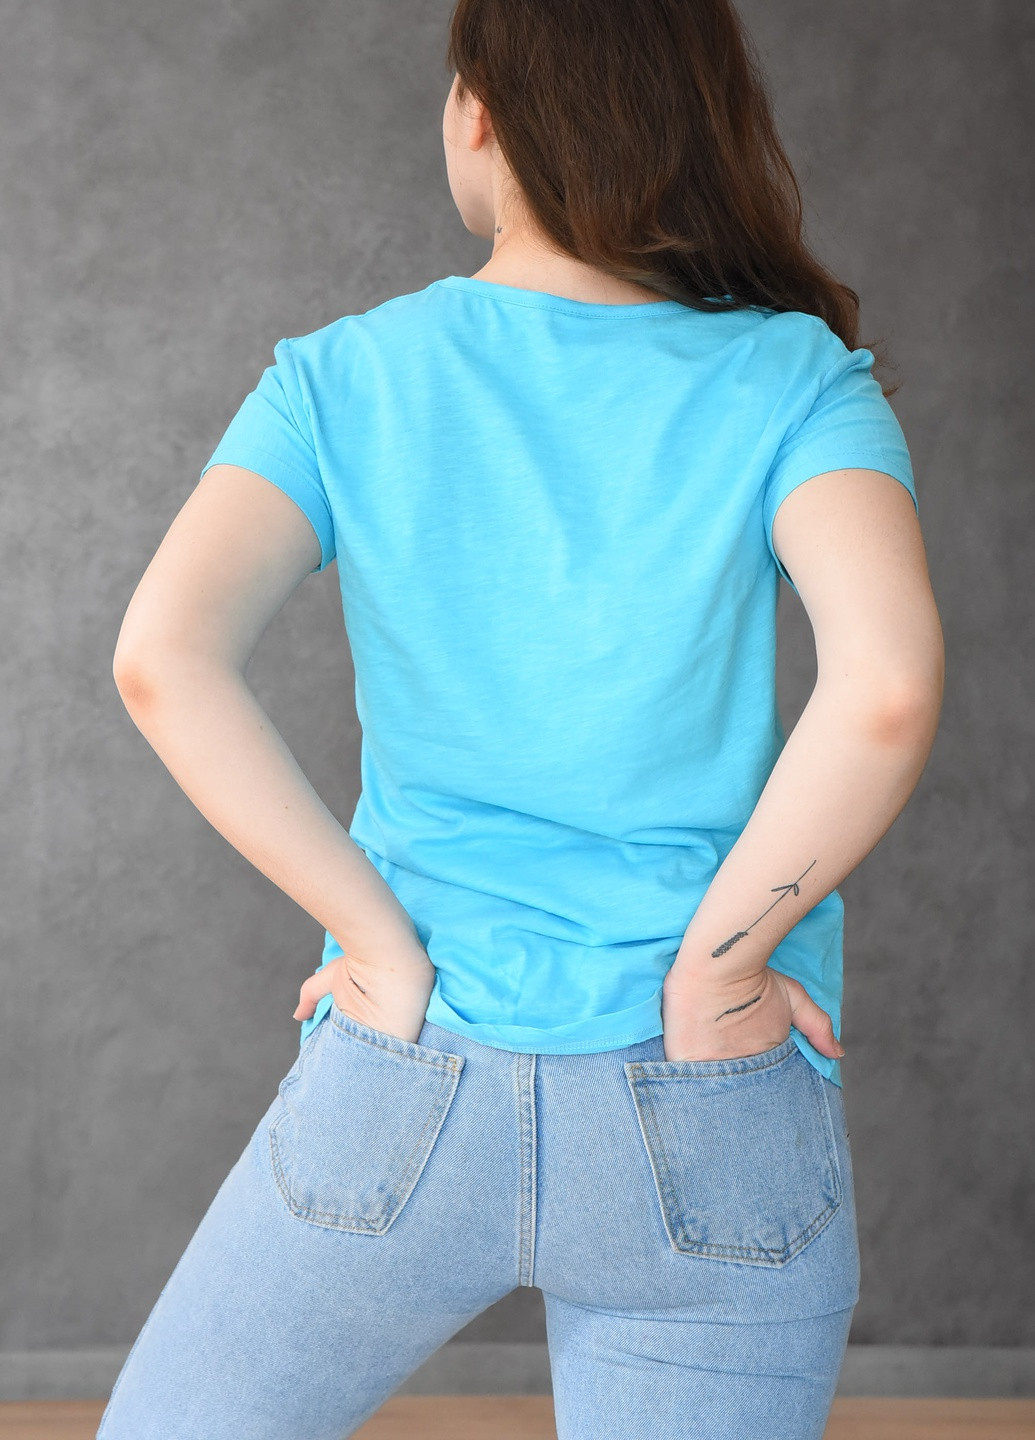 Голубая летняя футболка женская голубого цвета Let's Shop